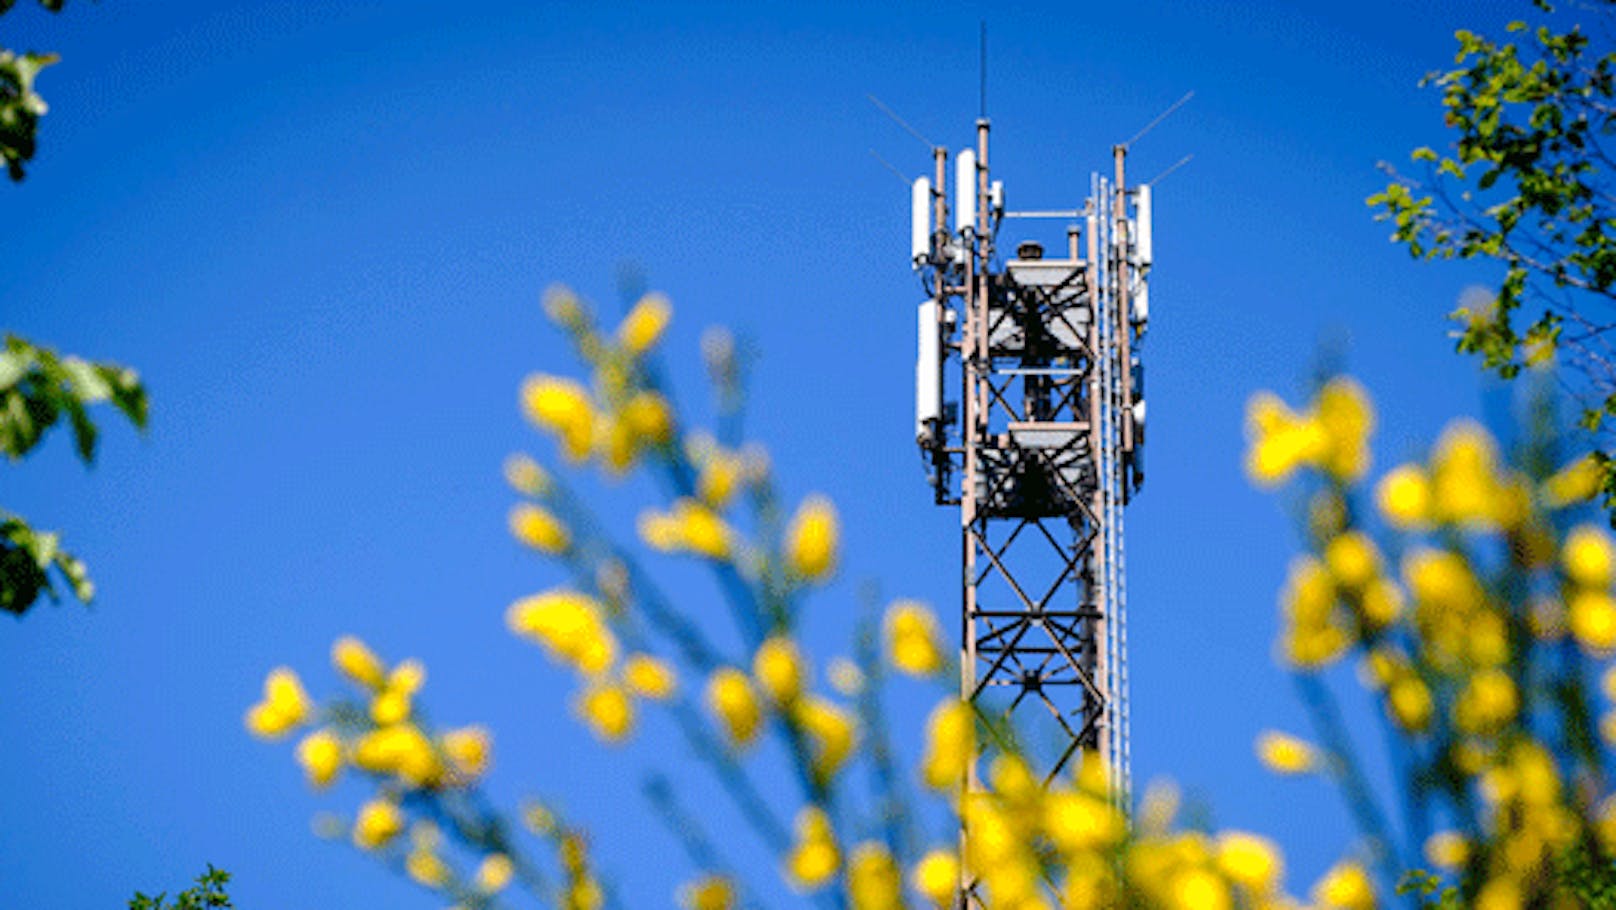 Magenta Telekom zahlt über 10 Millionen Euro für den Erwerb von Mobilfunkfrequenzen. 